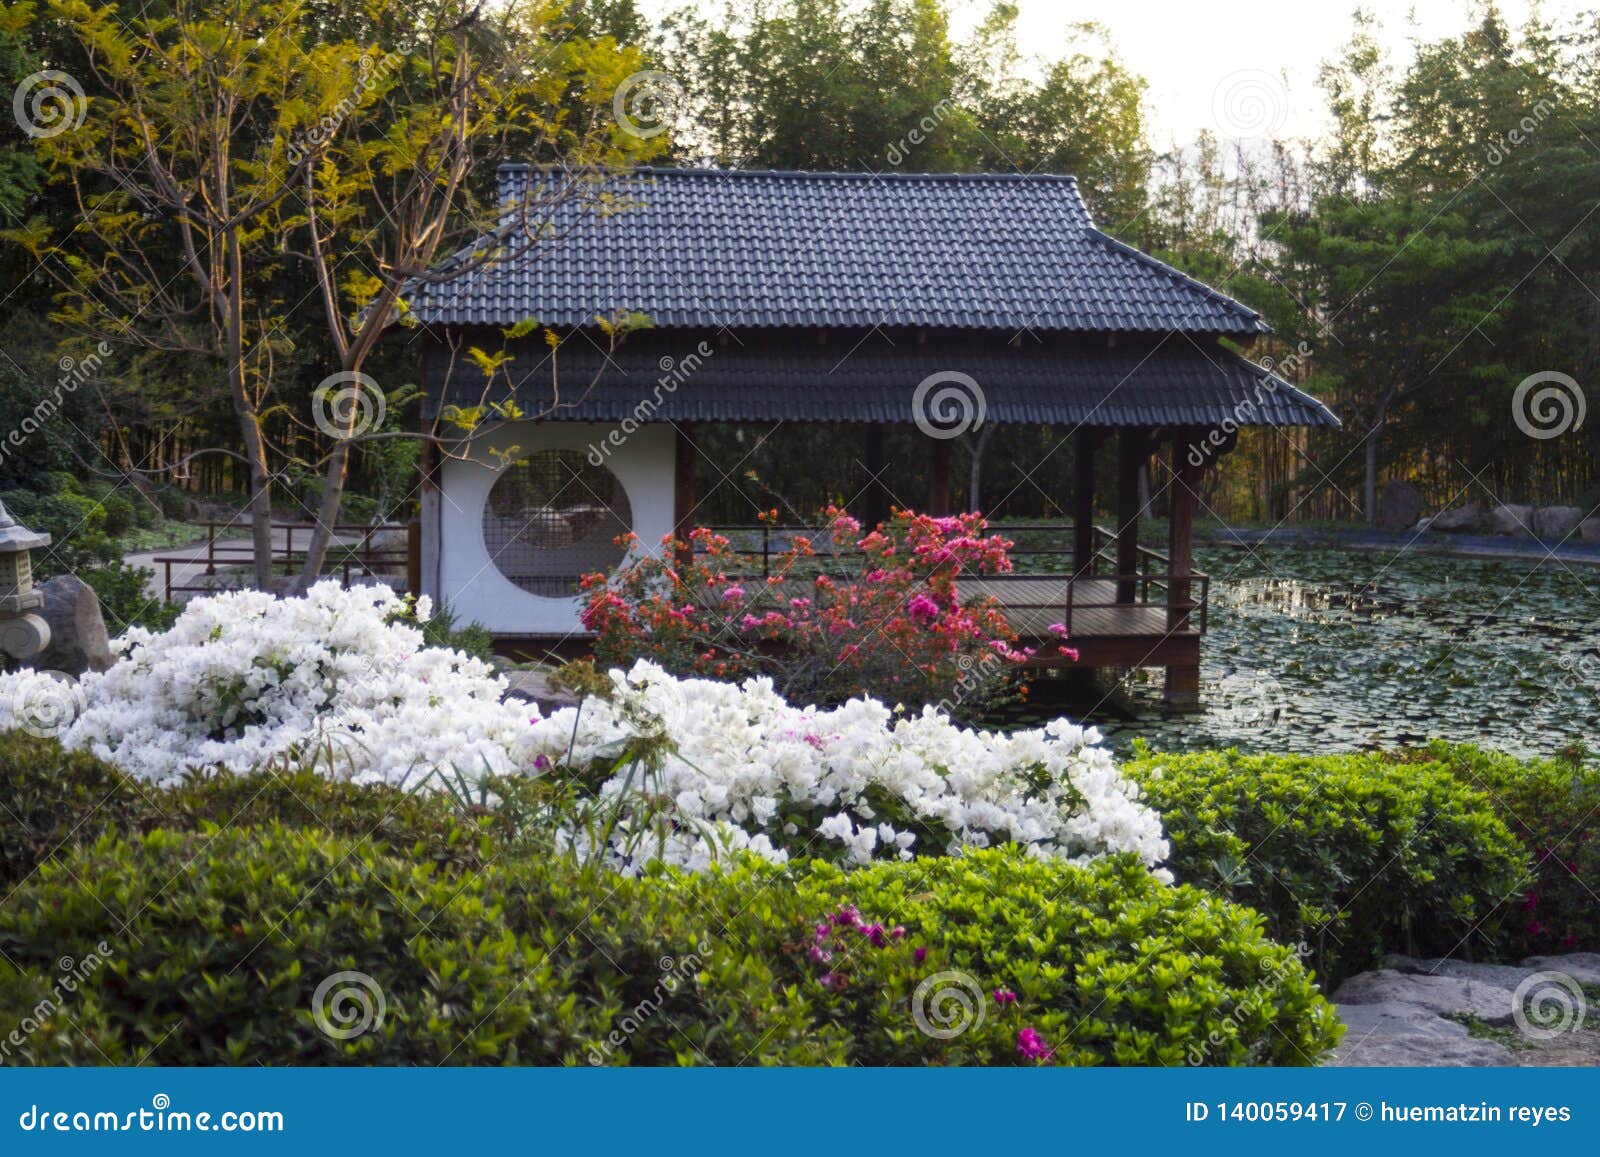 pagoda japonesa en jardin zen